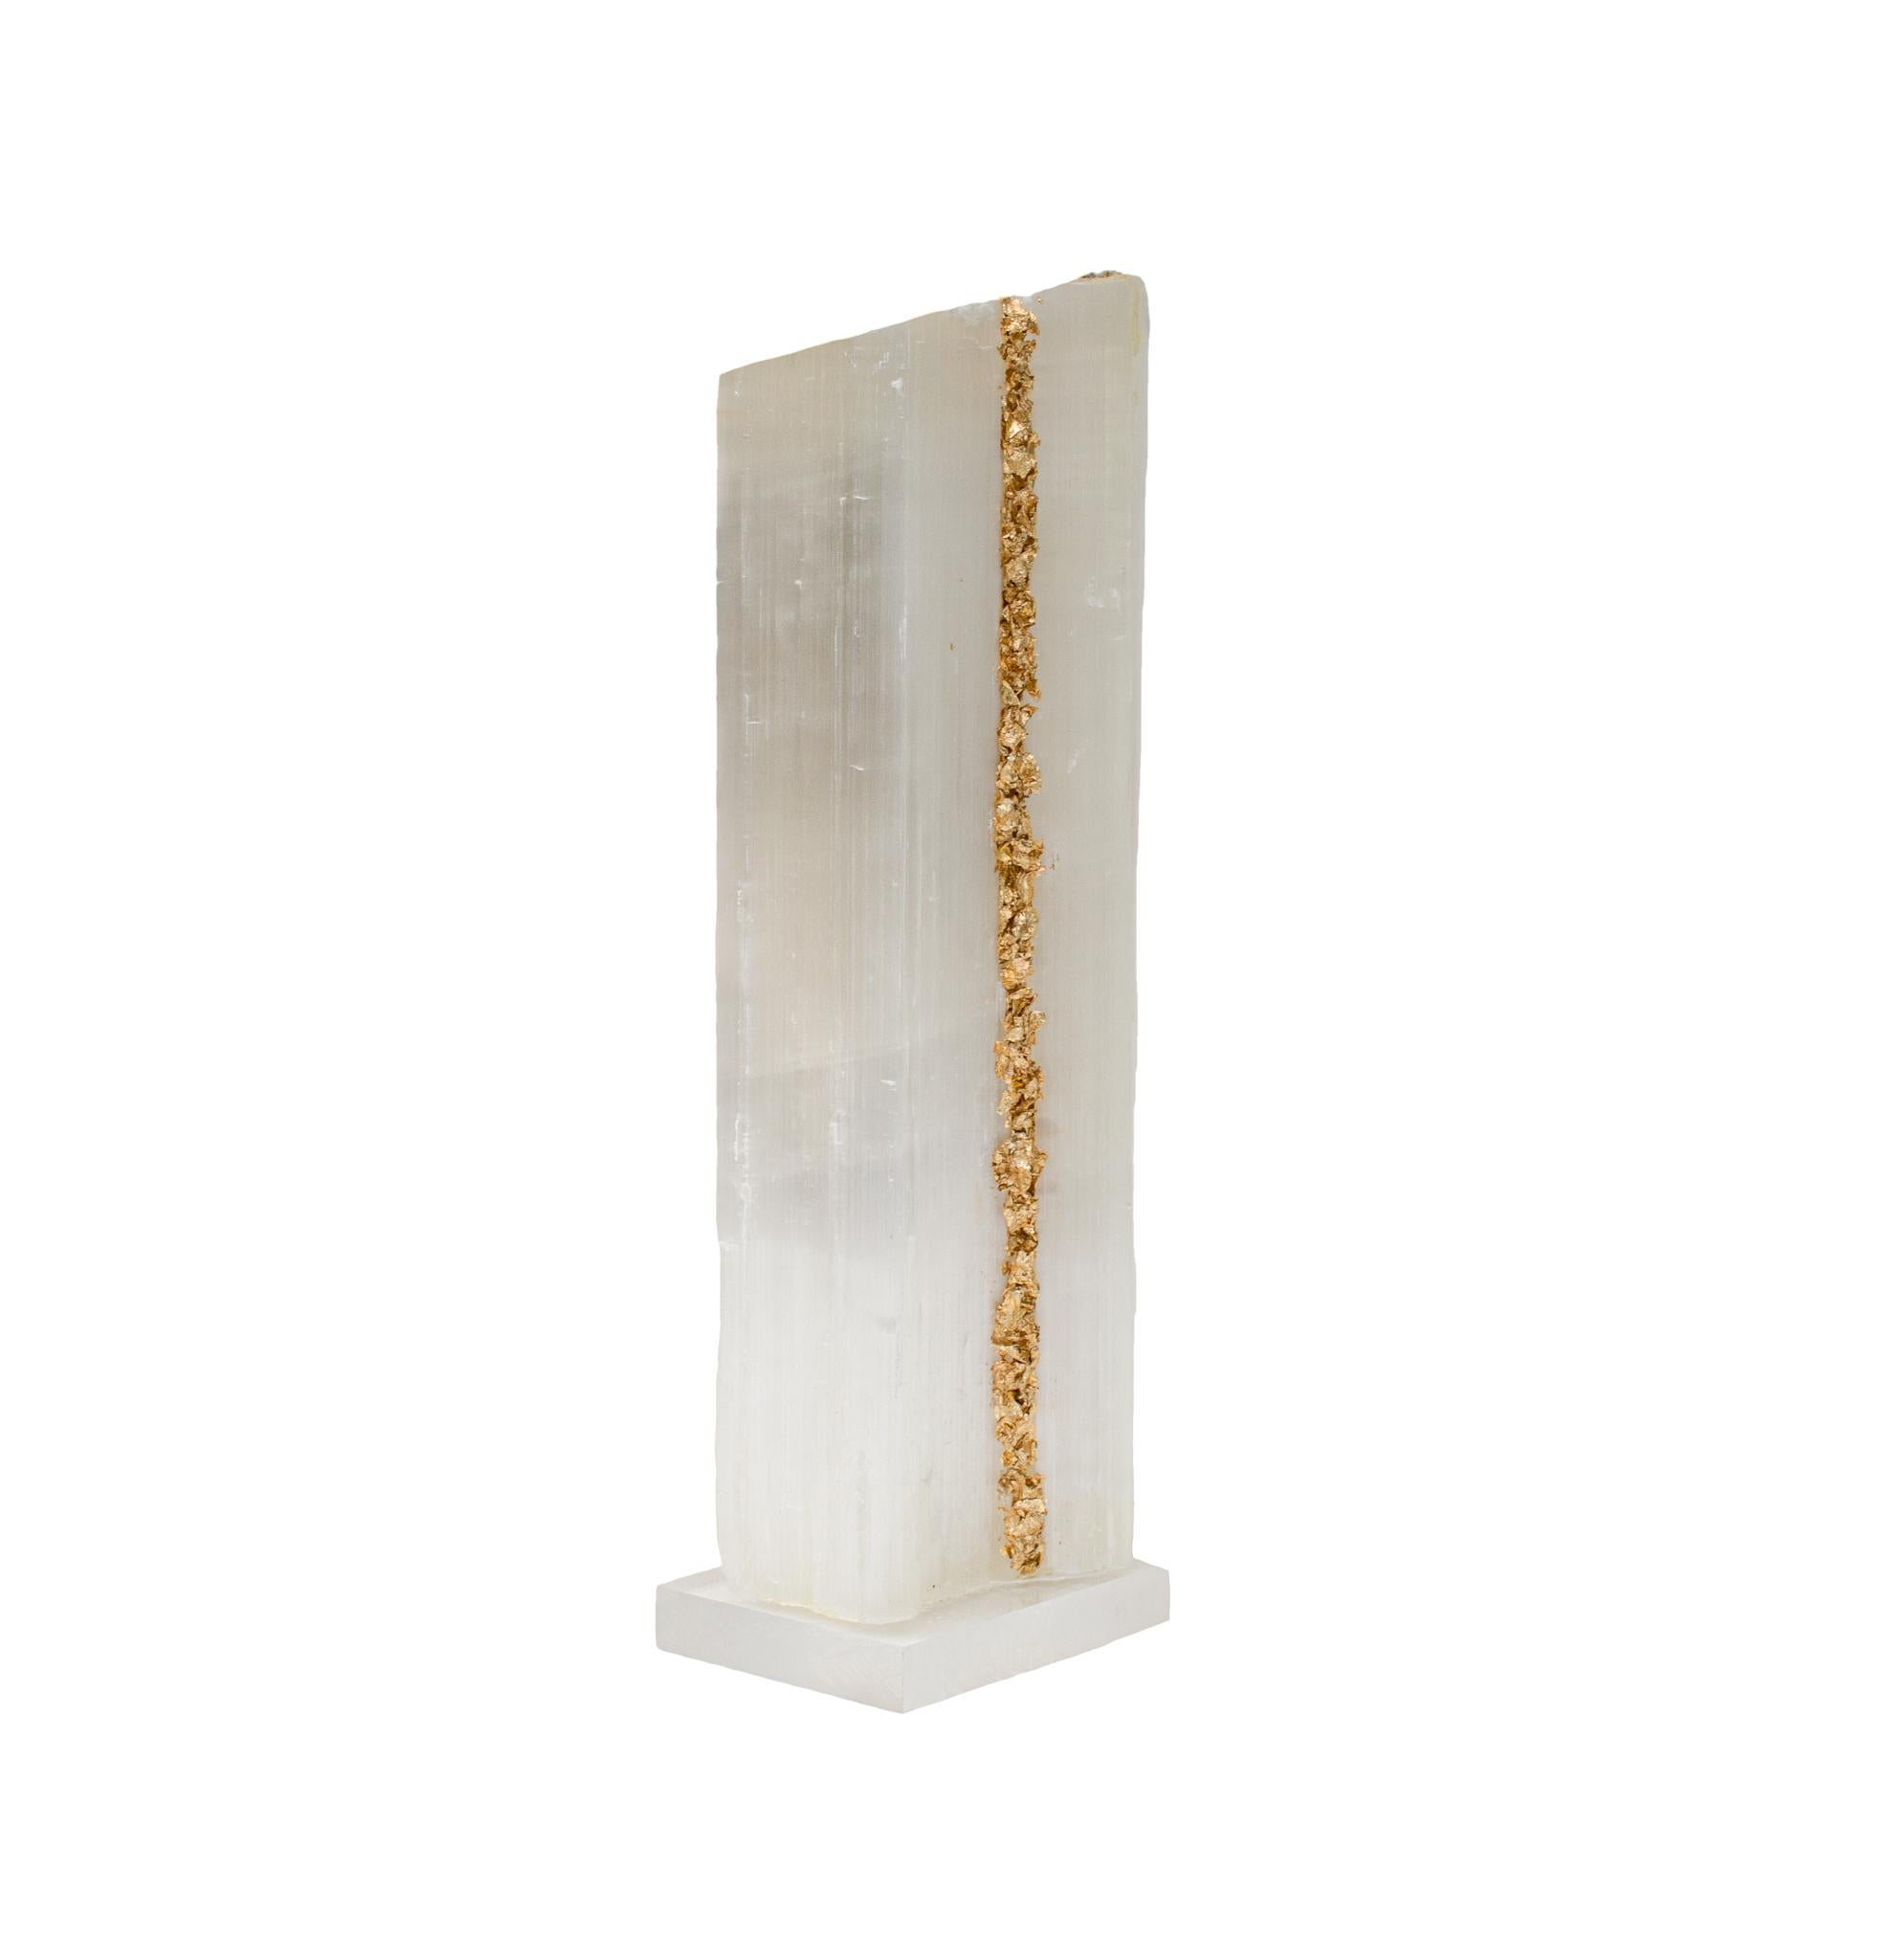 Lineal Selenit mit Blattgold auf einem Sockel aus Lucite. Selenitklötze sind einzelne, prismatische Selenitkristalle aus Marokko, die in ausgedehnten Schichten durch die Verdunstung von Meeressole entstanden sind. Dieses Mineral zeichnet sich durch